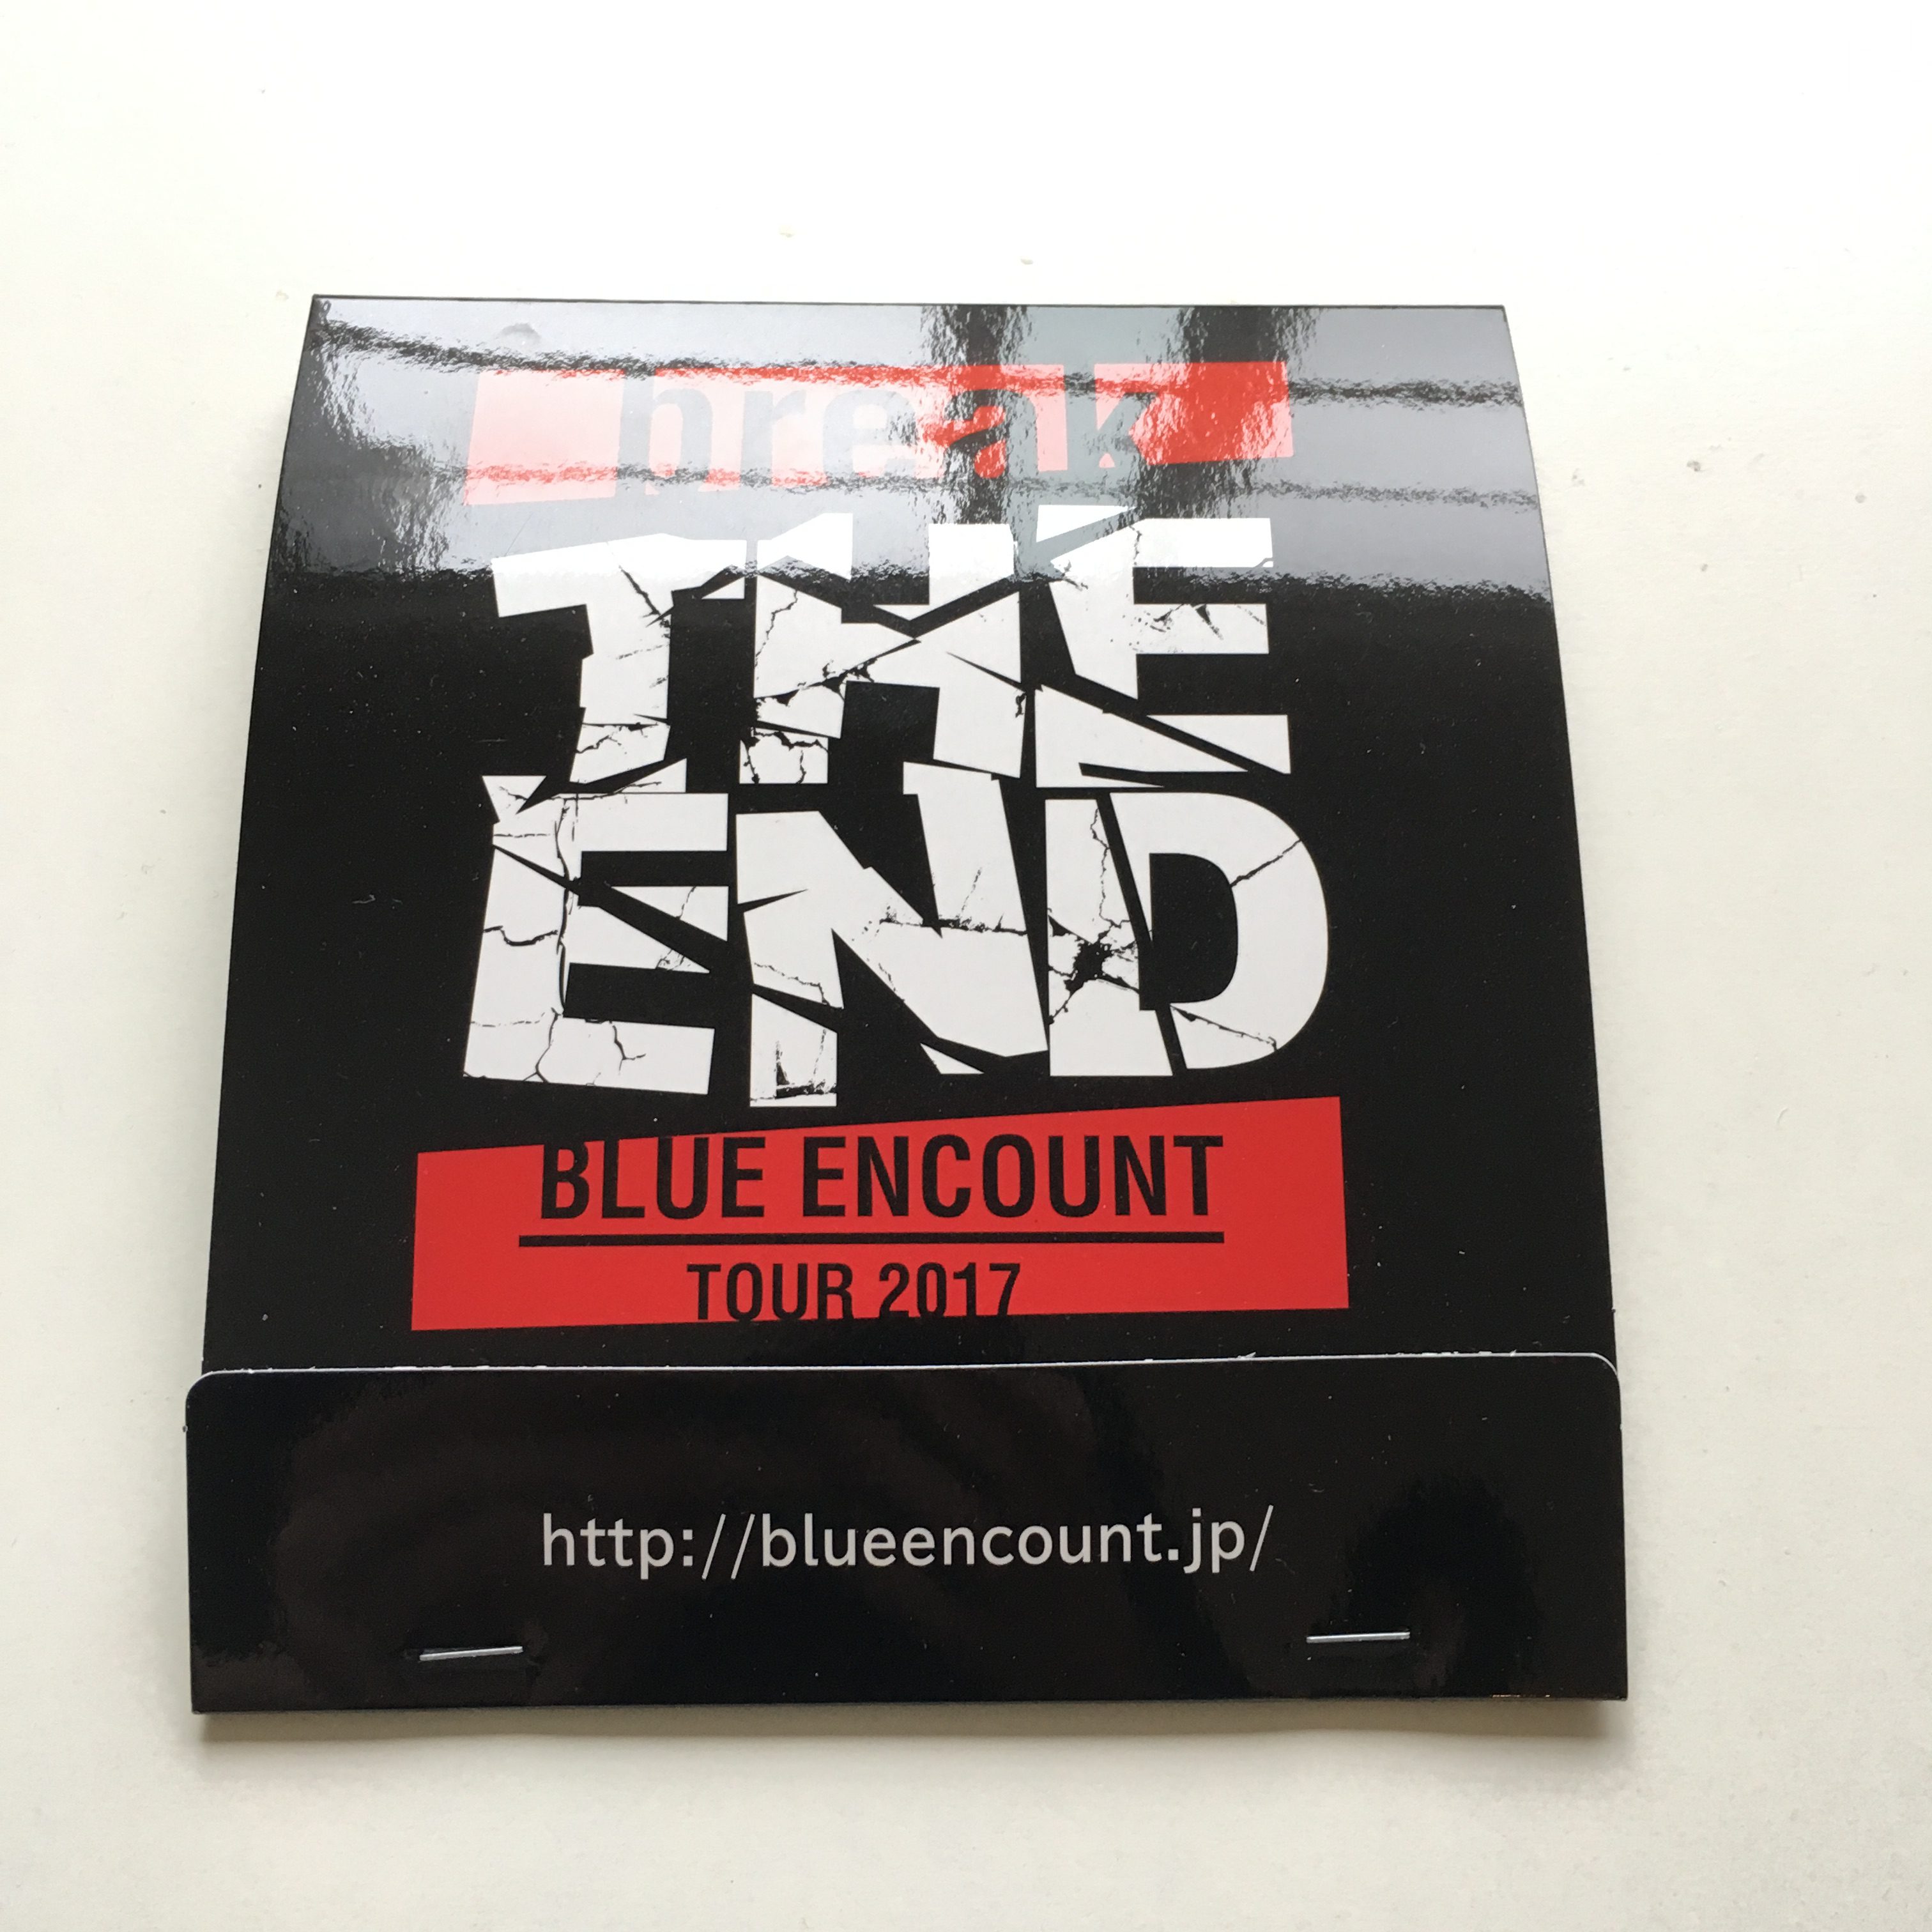 「BLUE ENCOUNT」のプレゼントキャンペーンにて